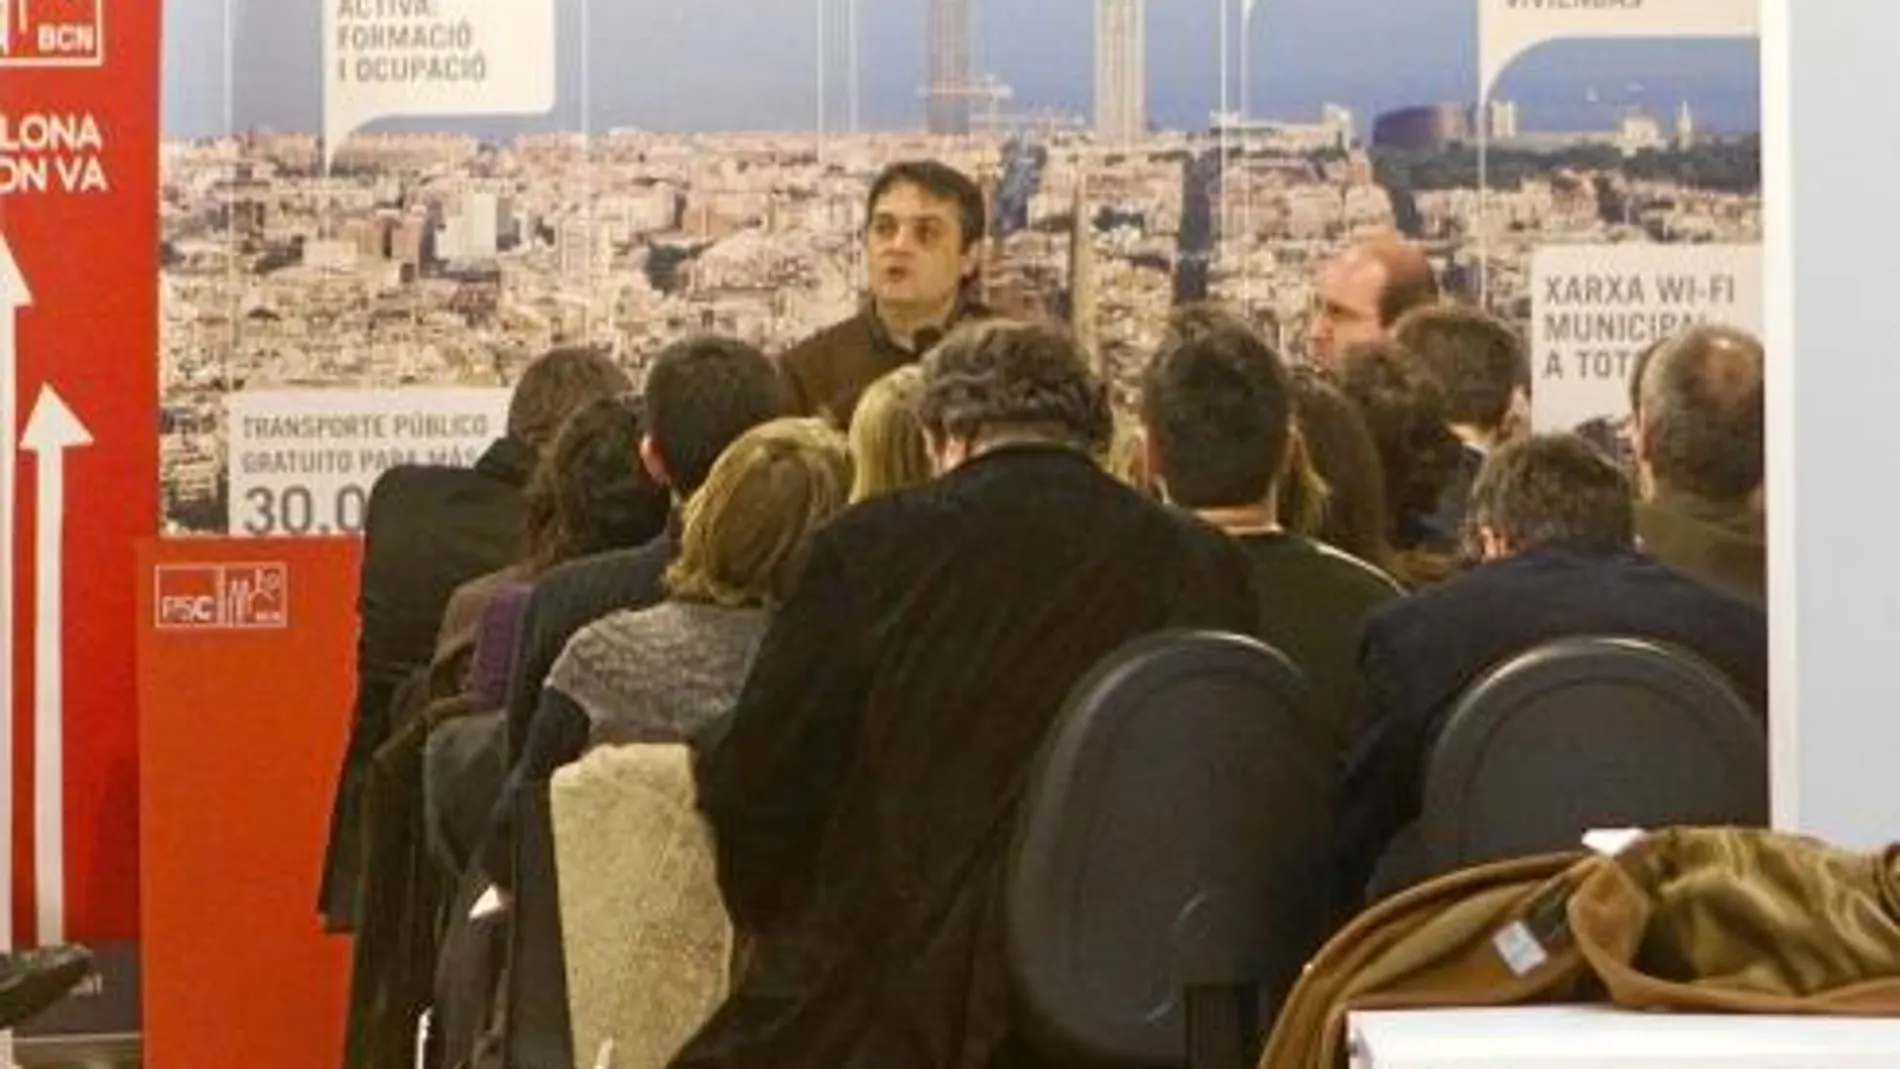 Imagen tomada desde el exterior de la reunión del PSC de Barcelona, que presidió Carles Martí